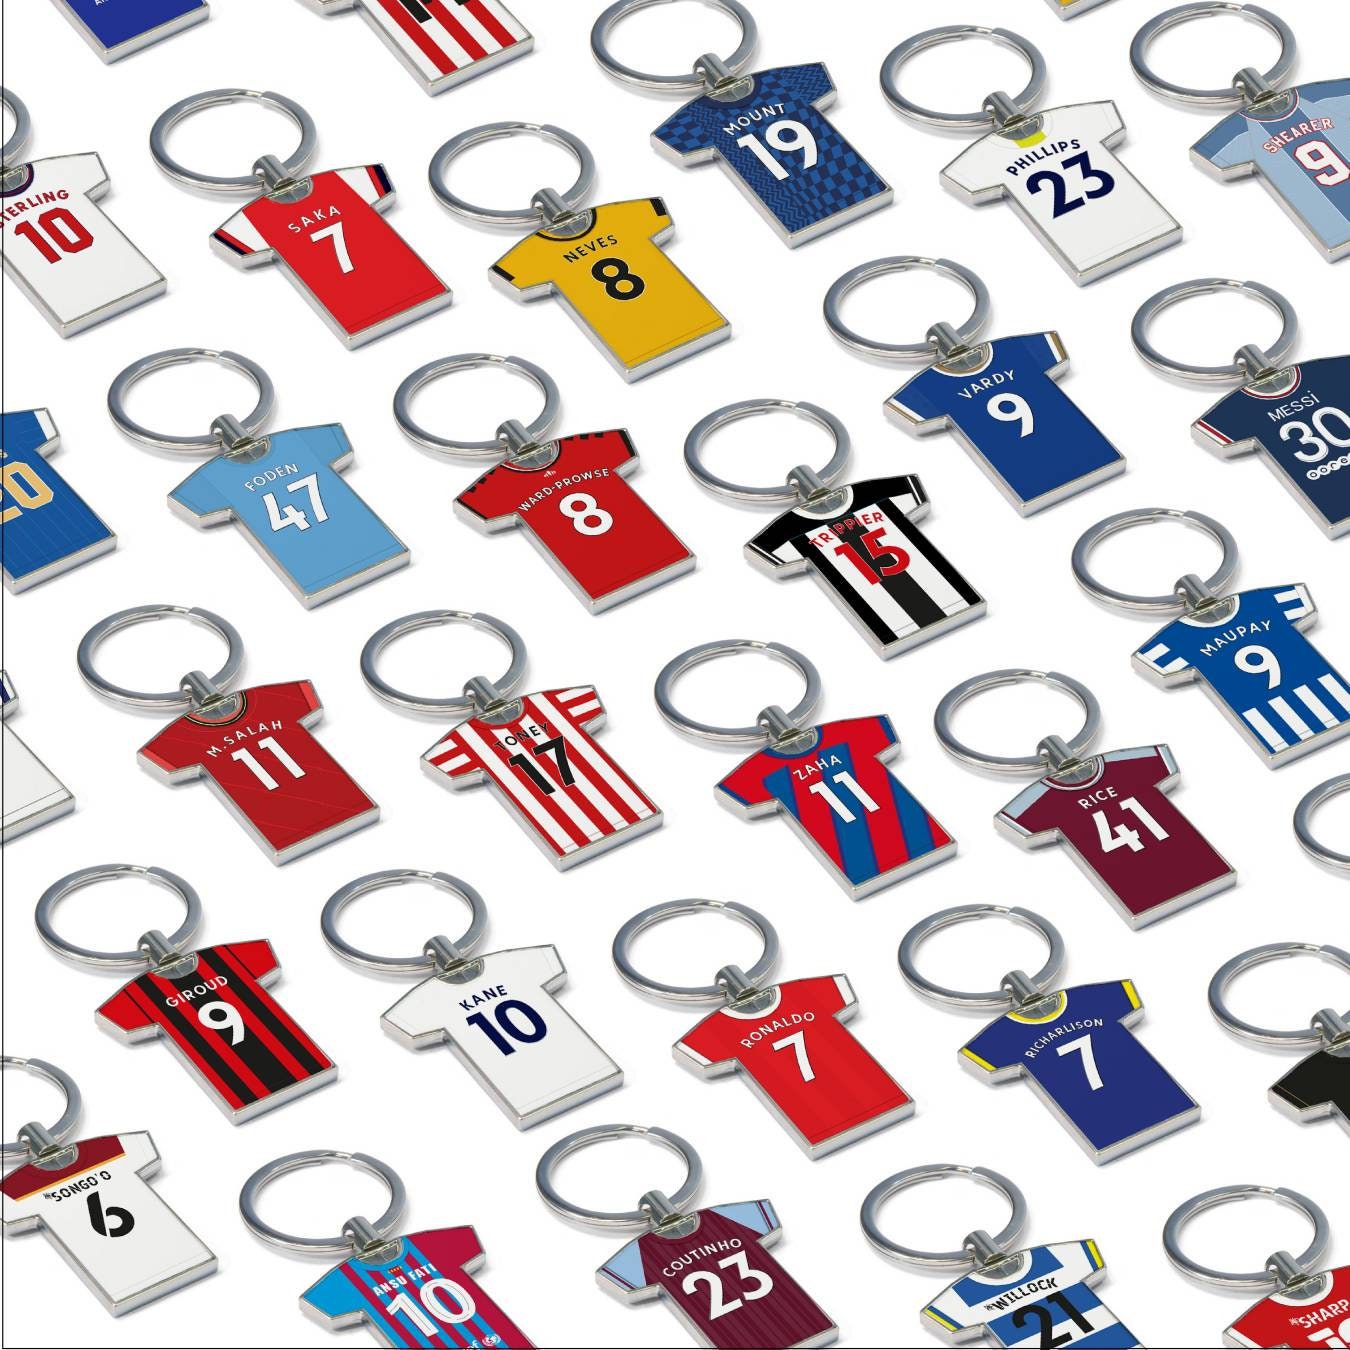 Porte-clés maillot football personnalisé. Porte-clés publicitaire.